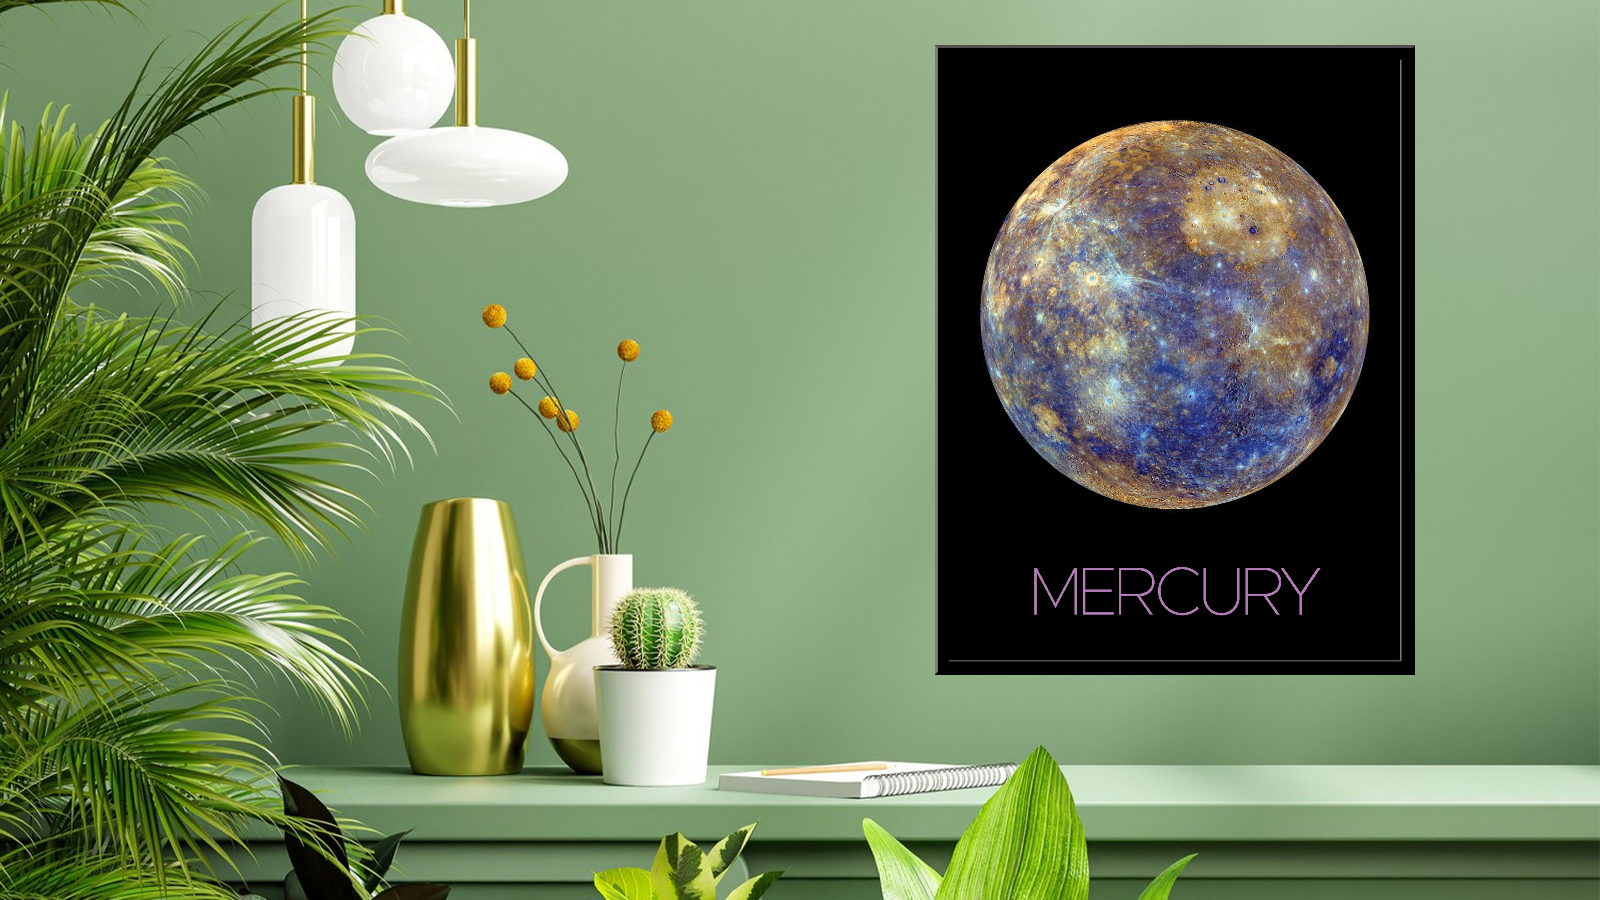 Merkury